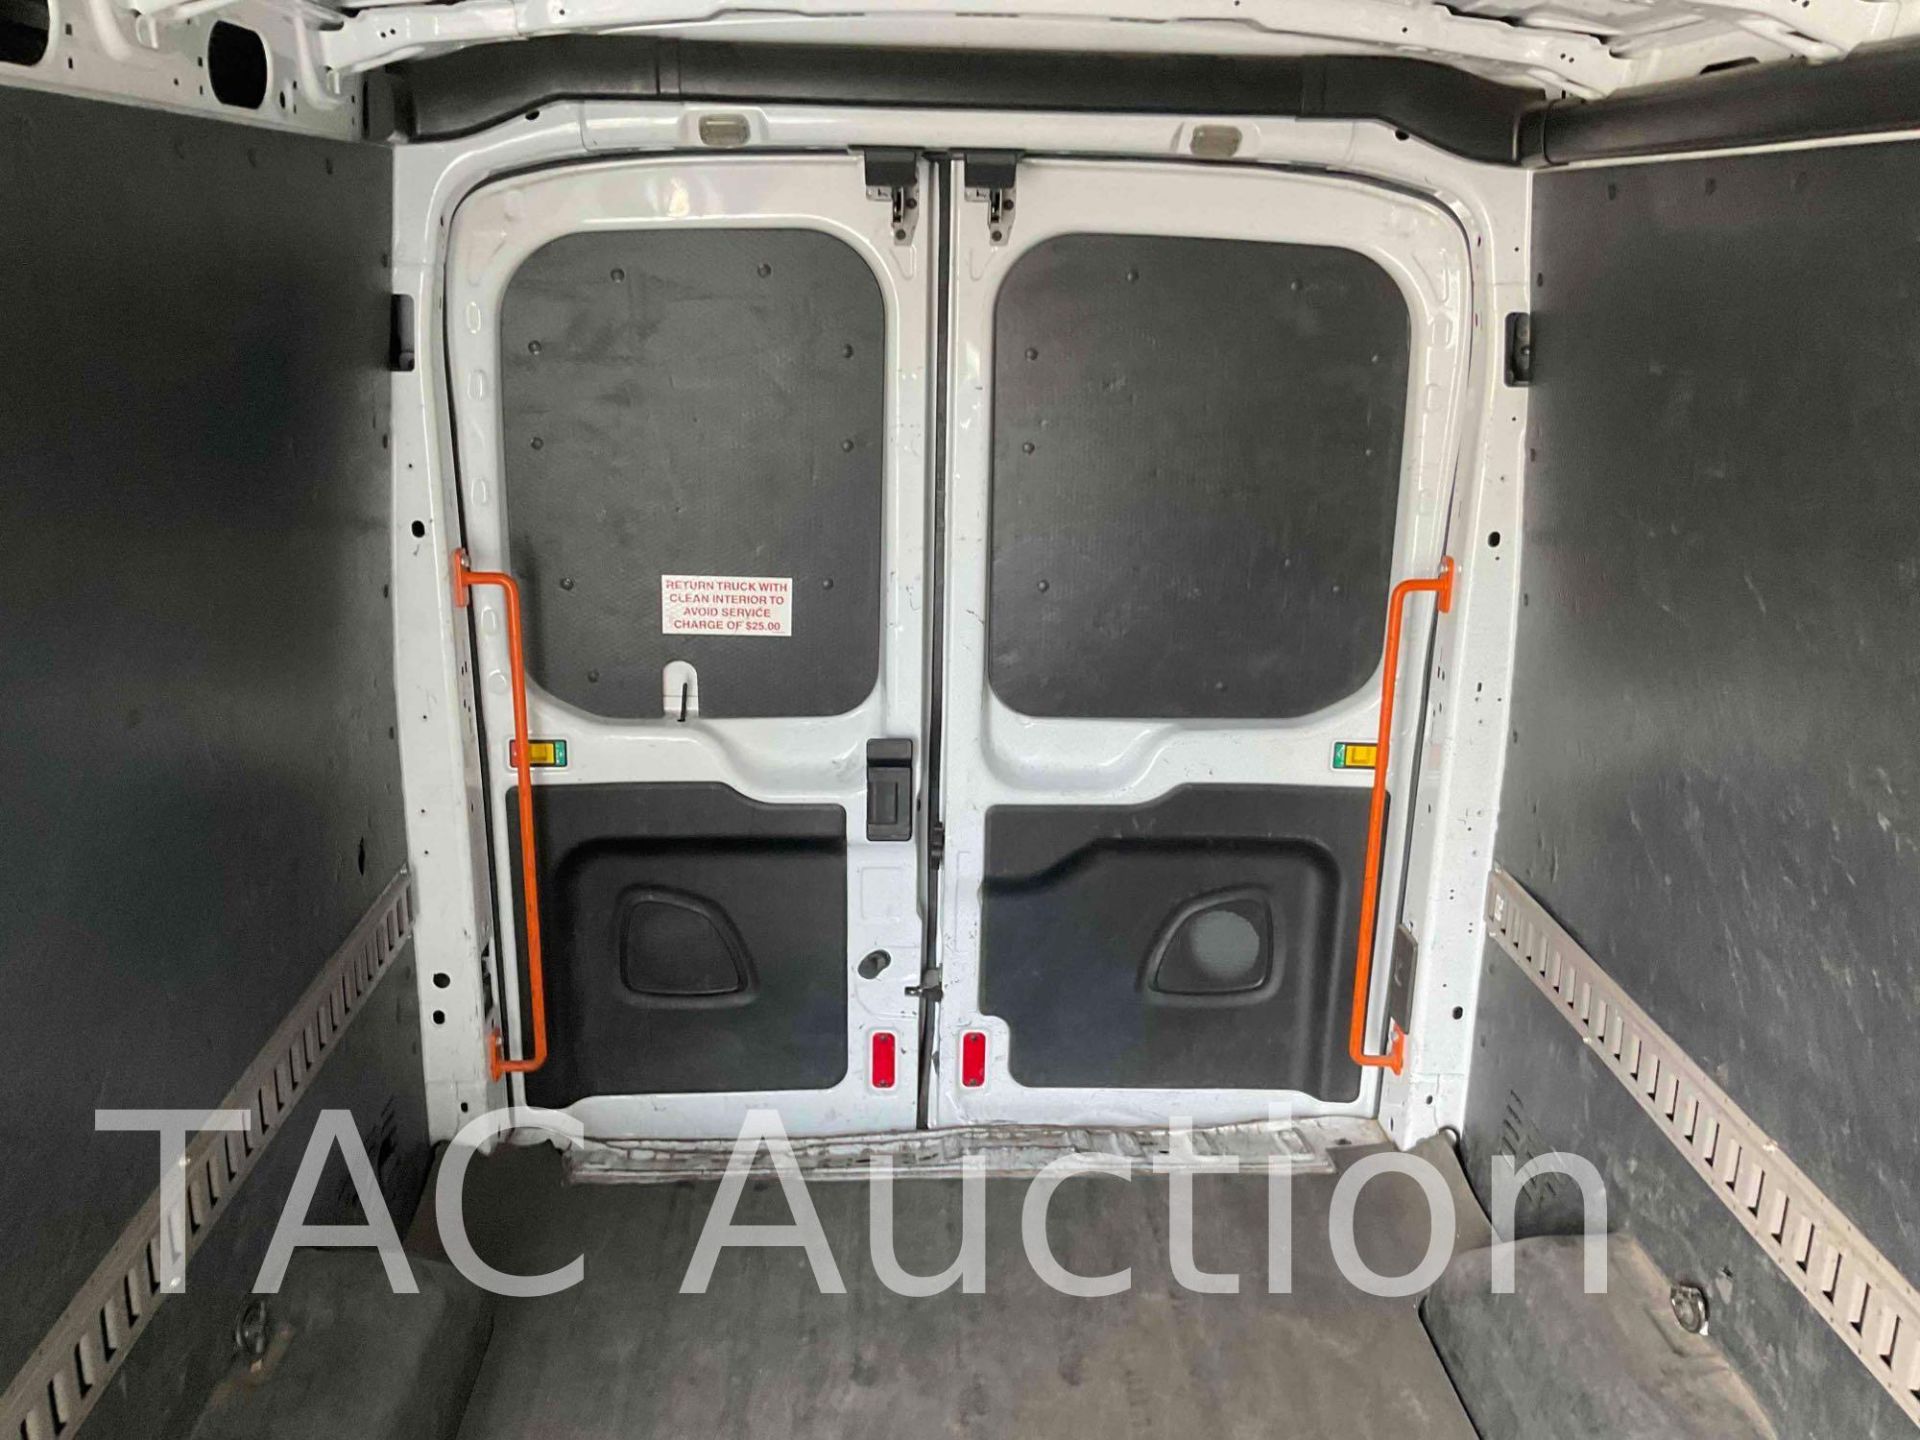 2019 Ford Transit 150 Cargo Van - Image 28 of 50